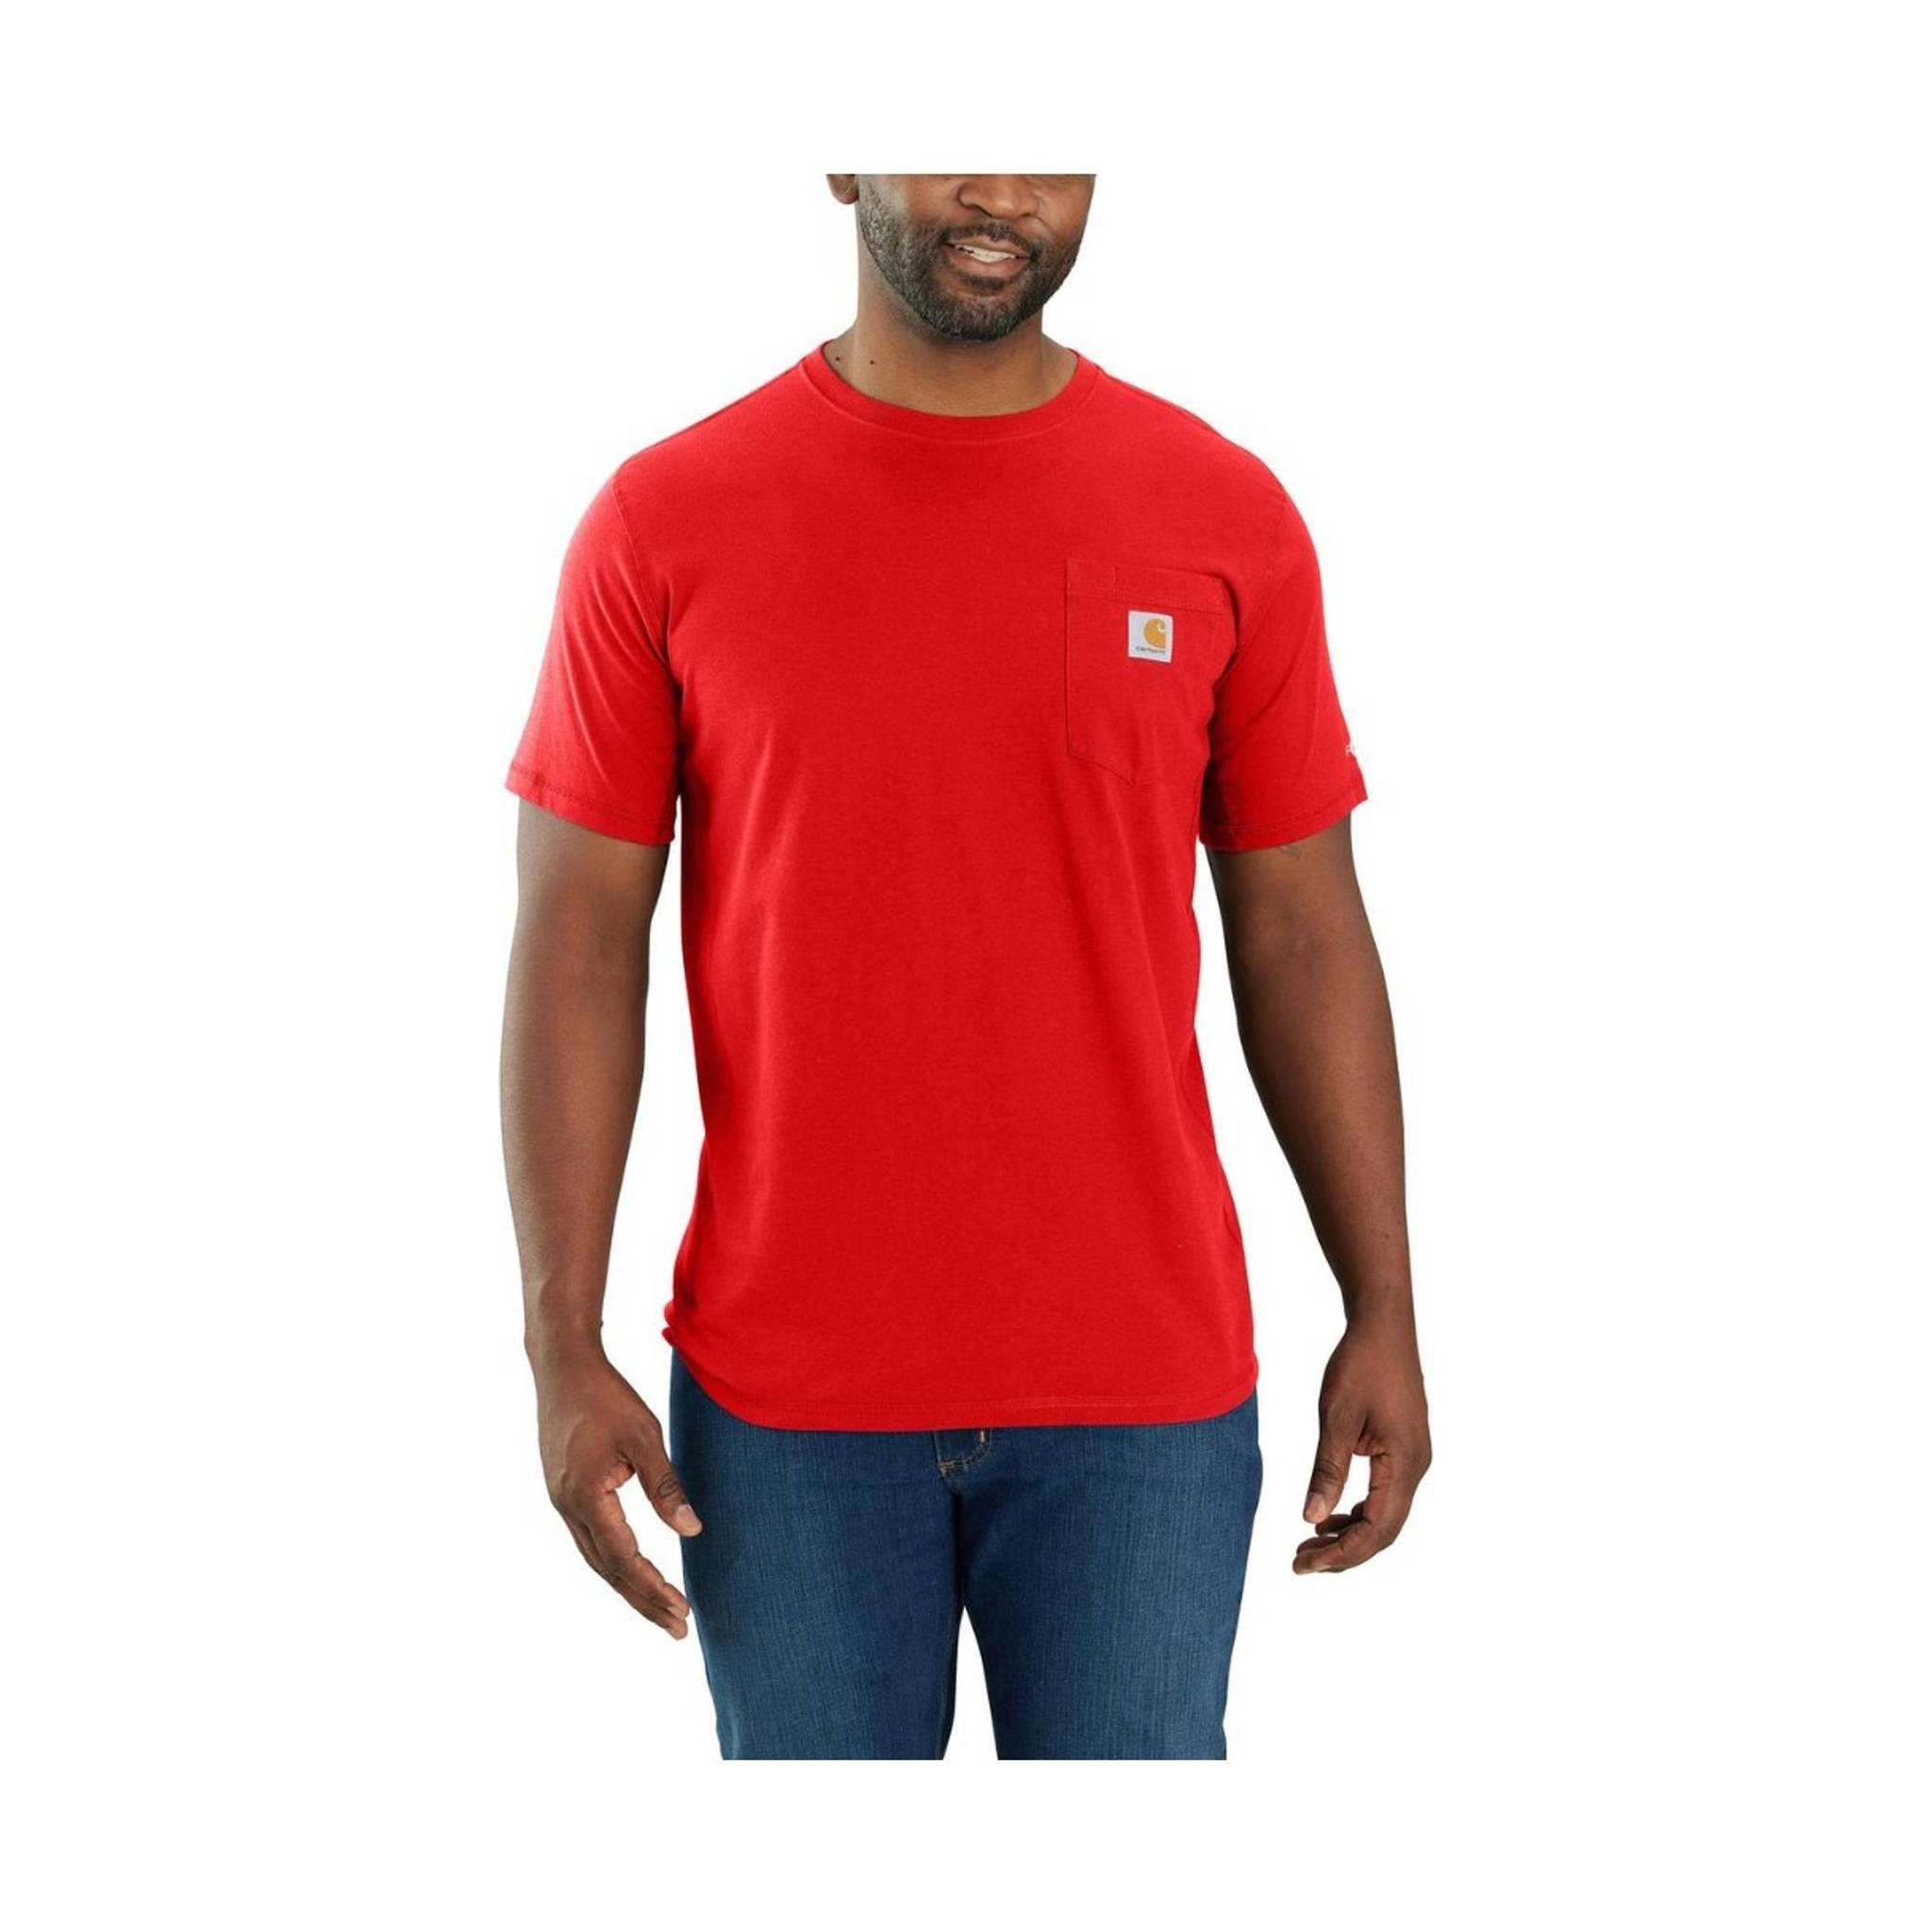 Carhartt Men's Force Relaxed Short Sleeve T-shirt